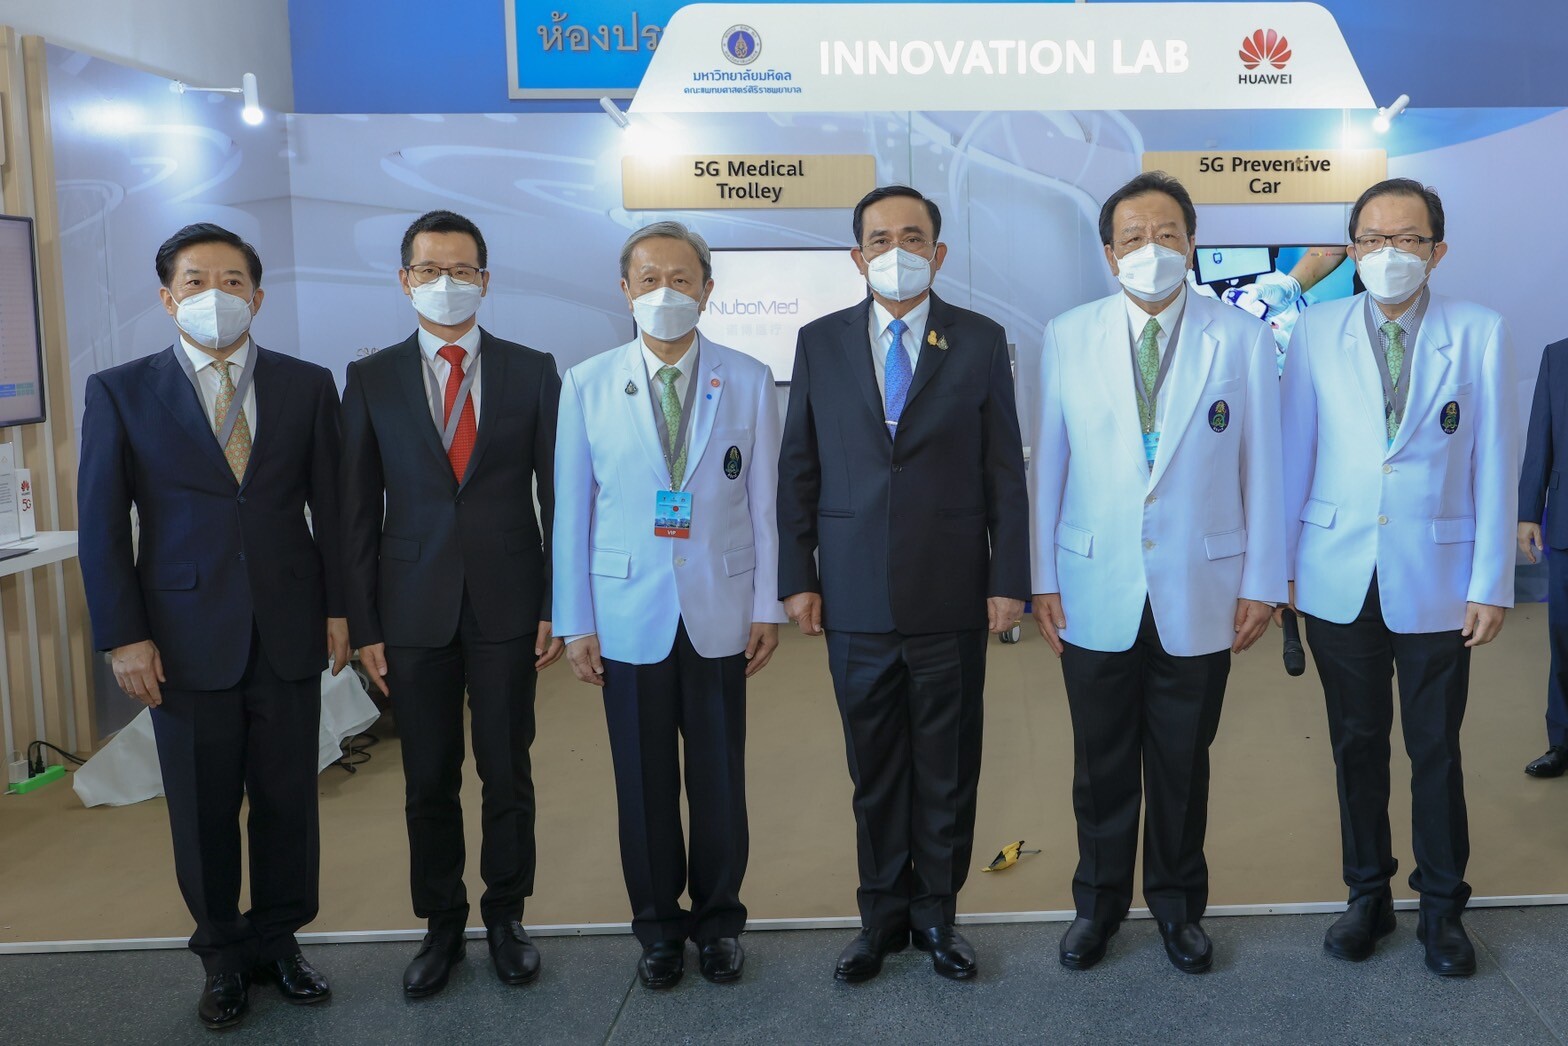 ศิริราช - กสทช. - หัวเว่ย ร่วมเปิดโครงการ "ศิริราชต้นแบบโรงพยาบาลอัจฉริยะ ระดับโลกด้วยเทคโนโลยีเครือข่าย 5G (Siriraj World Class 5G Smart Hospital)"